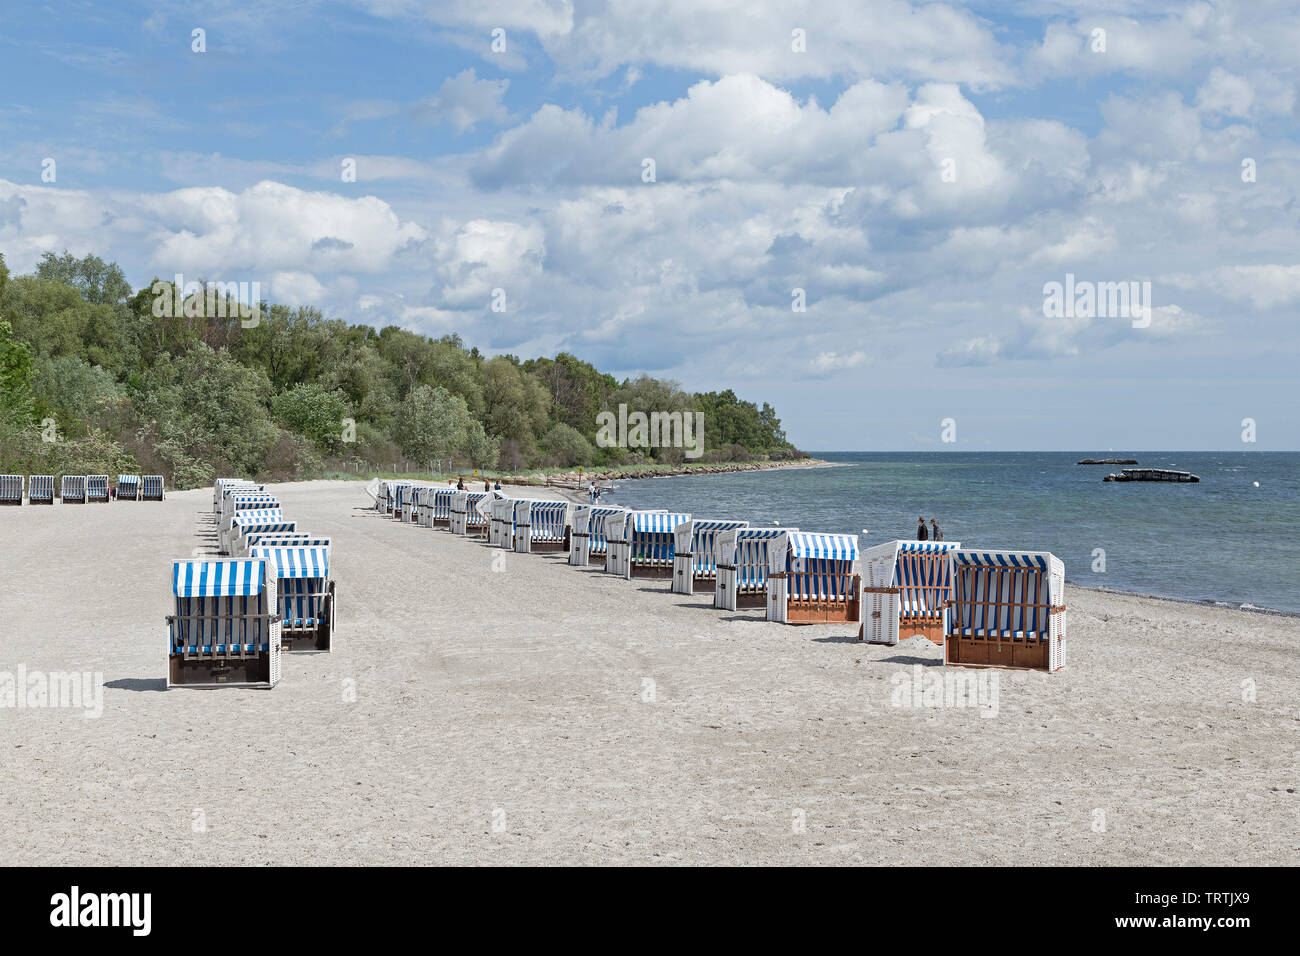 beach, Weisse Wiek, Boltenhagen, Mecklenburg-West Pomerania, Germany Stock Photo